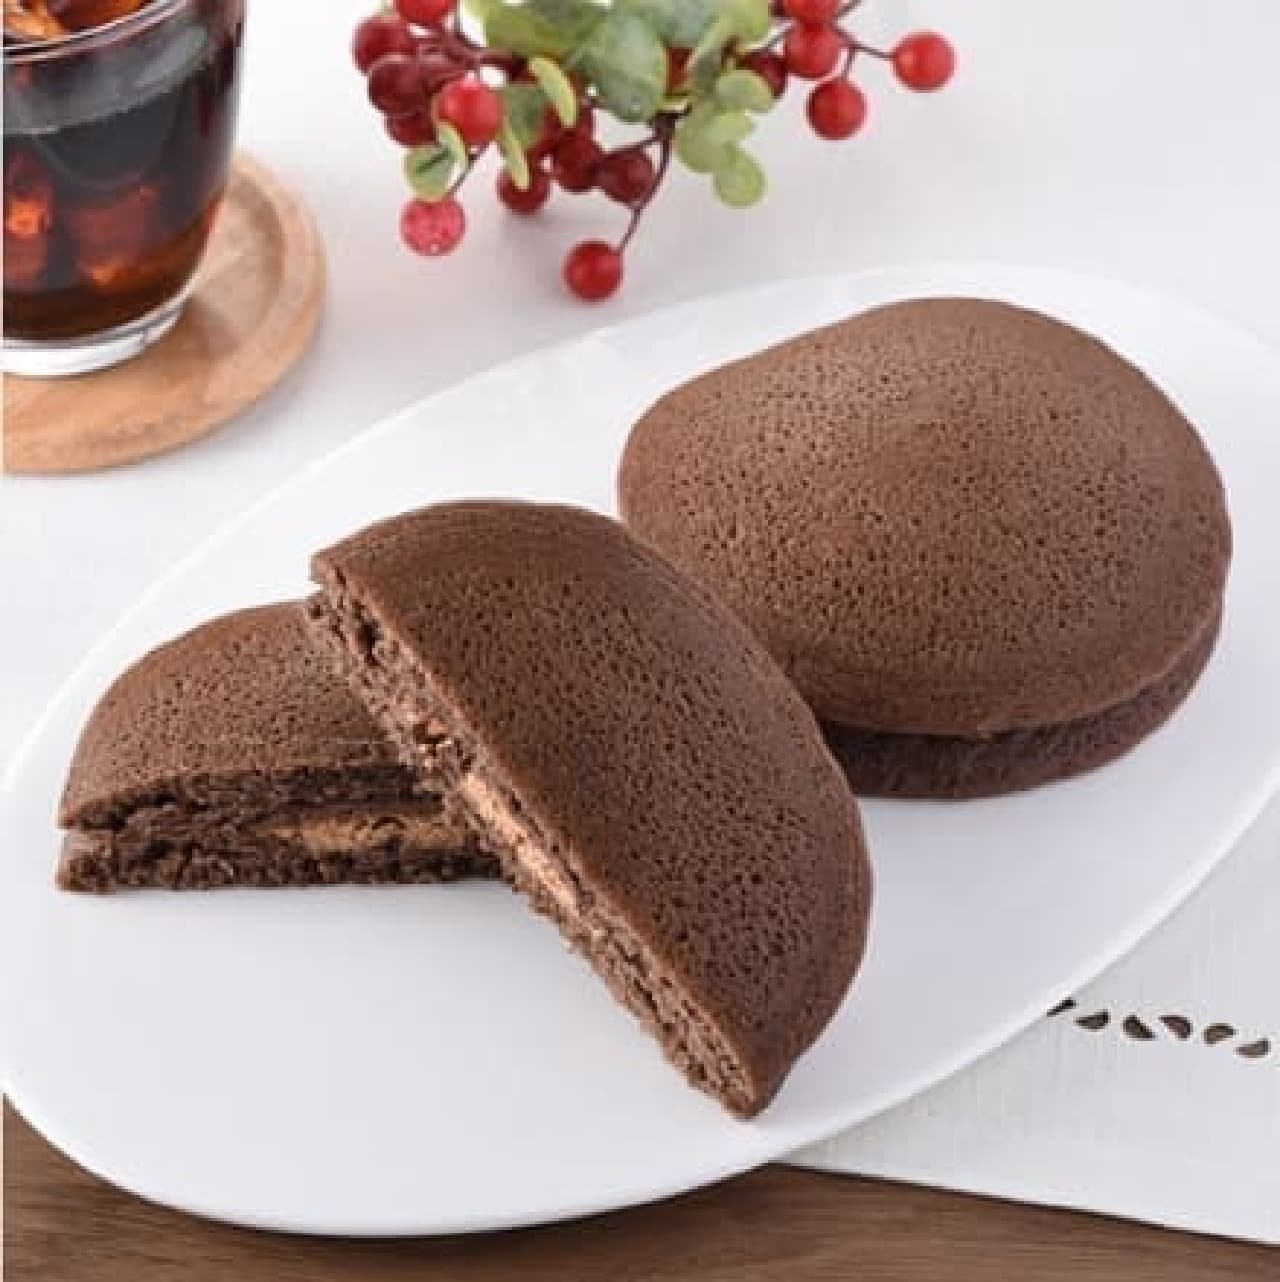 FamilyMart "Chocolate Pancake (Almond & Chocolate)"